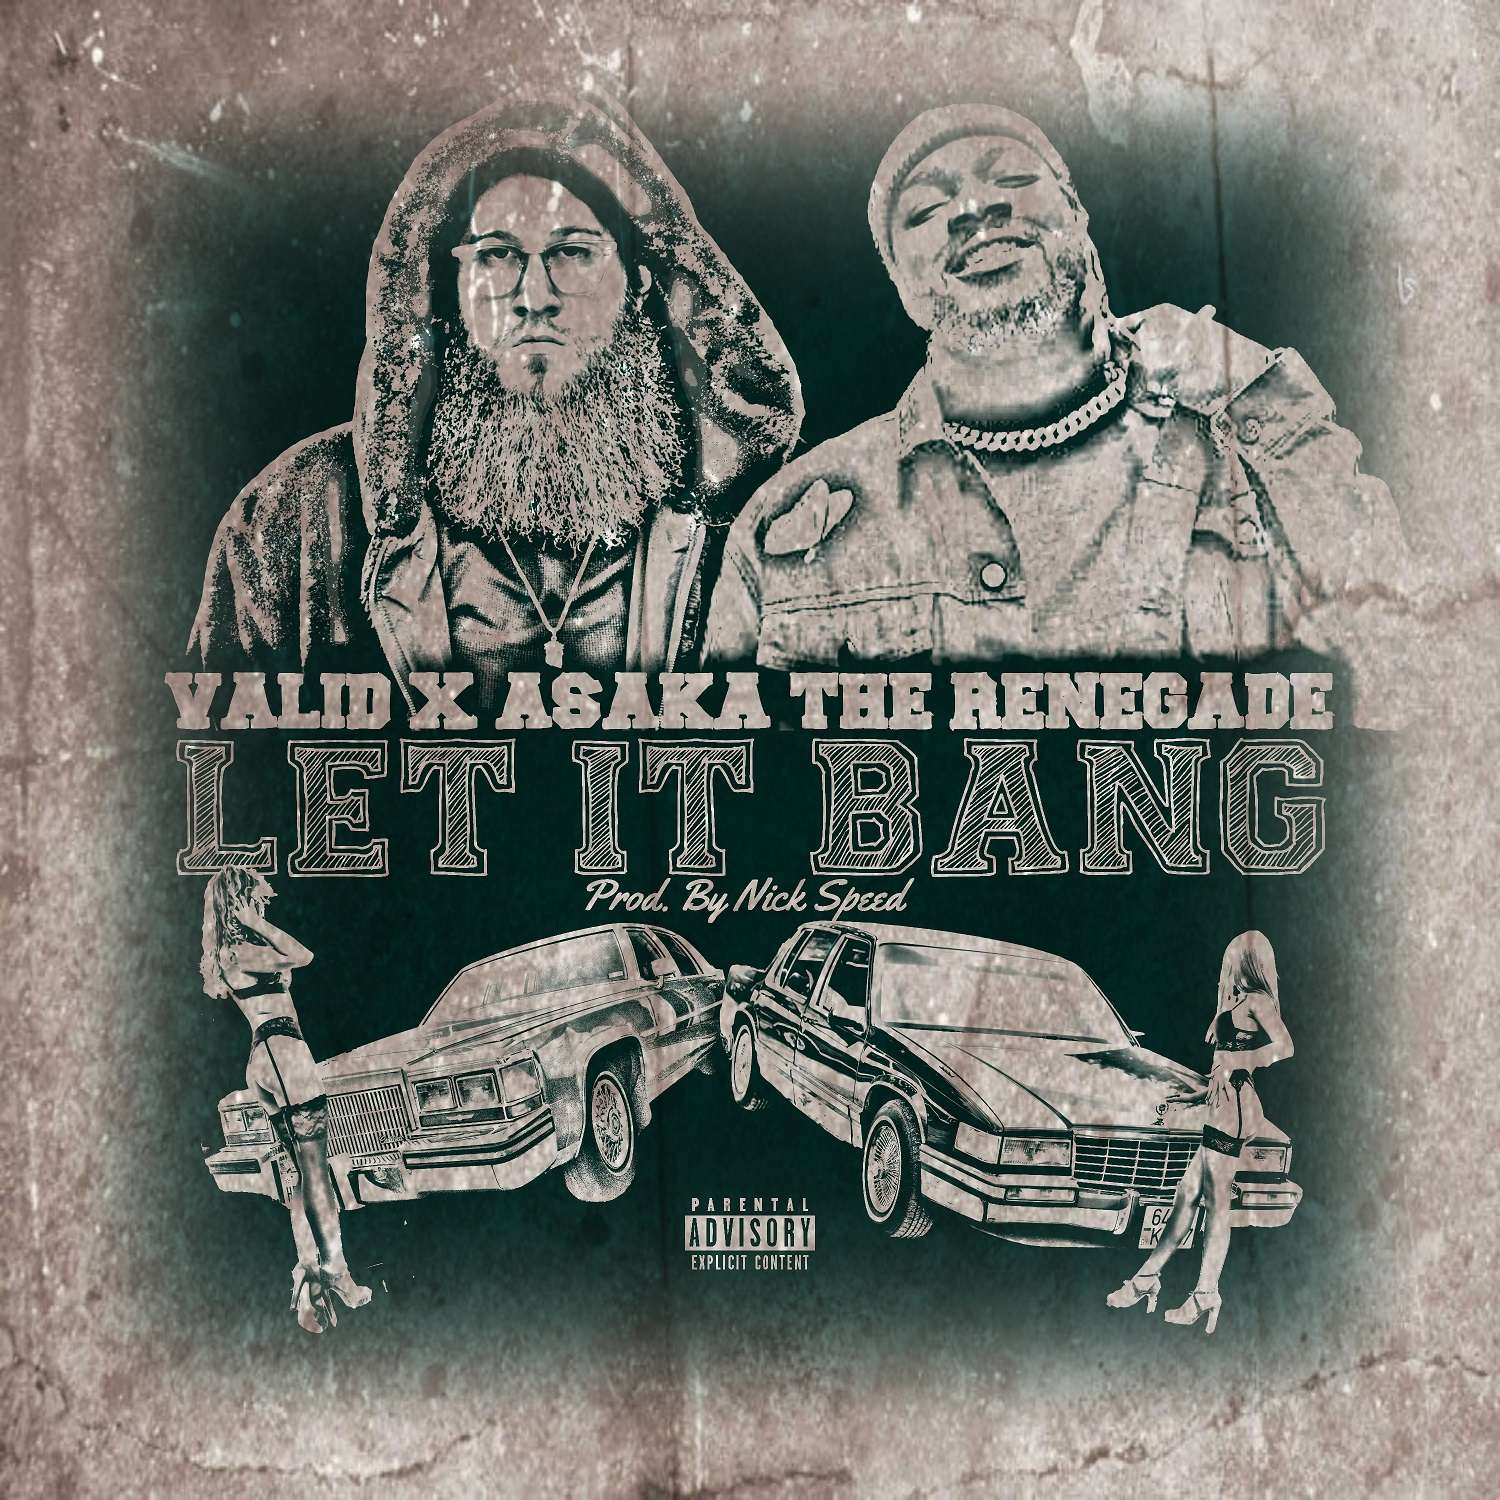 Valid x Asaka The Renegade – Let It Bang